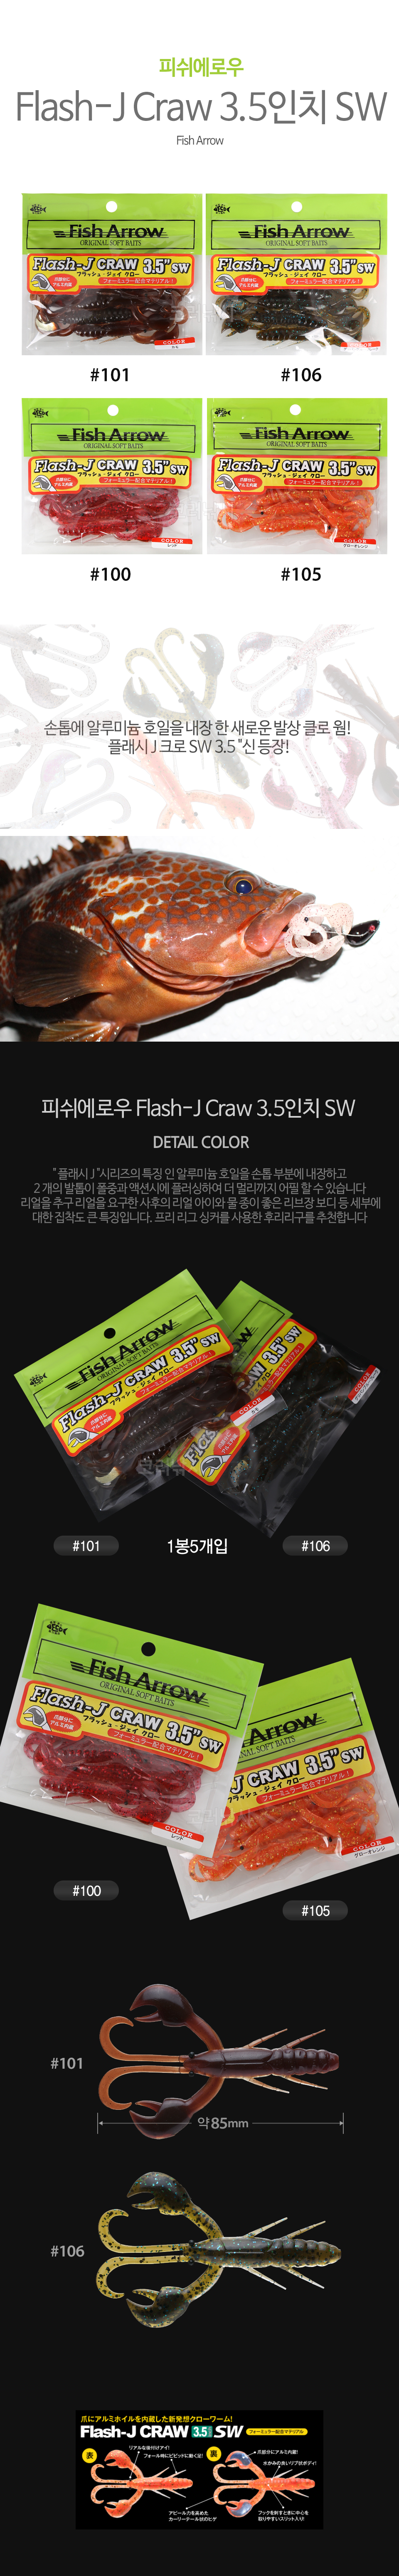 ǽο (Fish Arrow) Flash-J Craw 3.5ġ SW ÷ũο ÷Jũο ÷Jũο ÷Jũο ÷Jũο ǽÿο ǽο ǽþַο ǽַο ϵǽ ϵ Ȳ  ӹٸ ٱݹٸ ɼ 